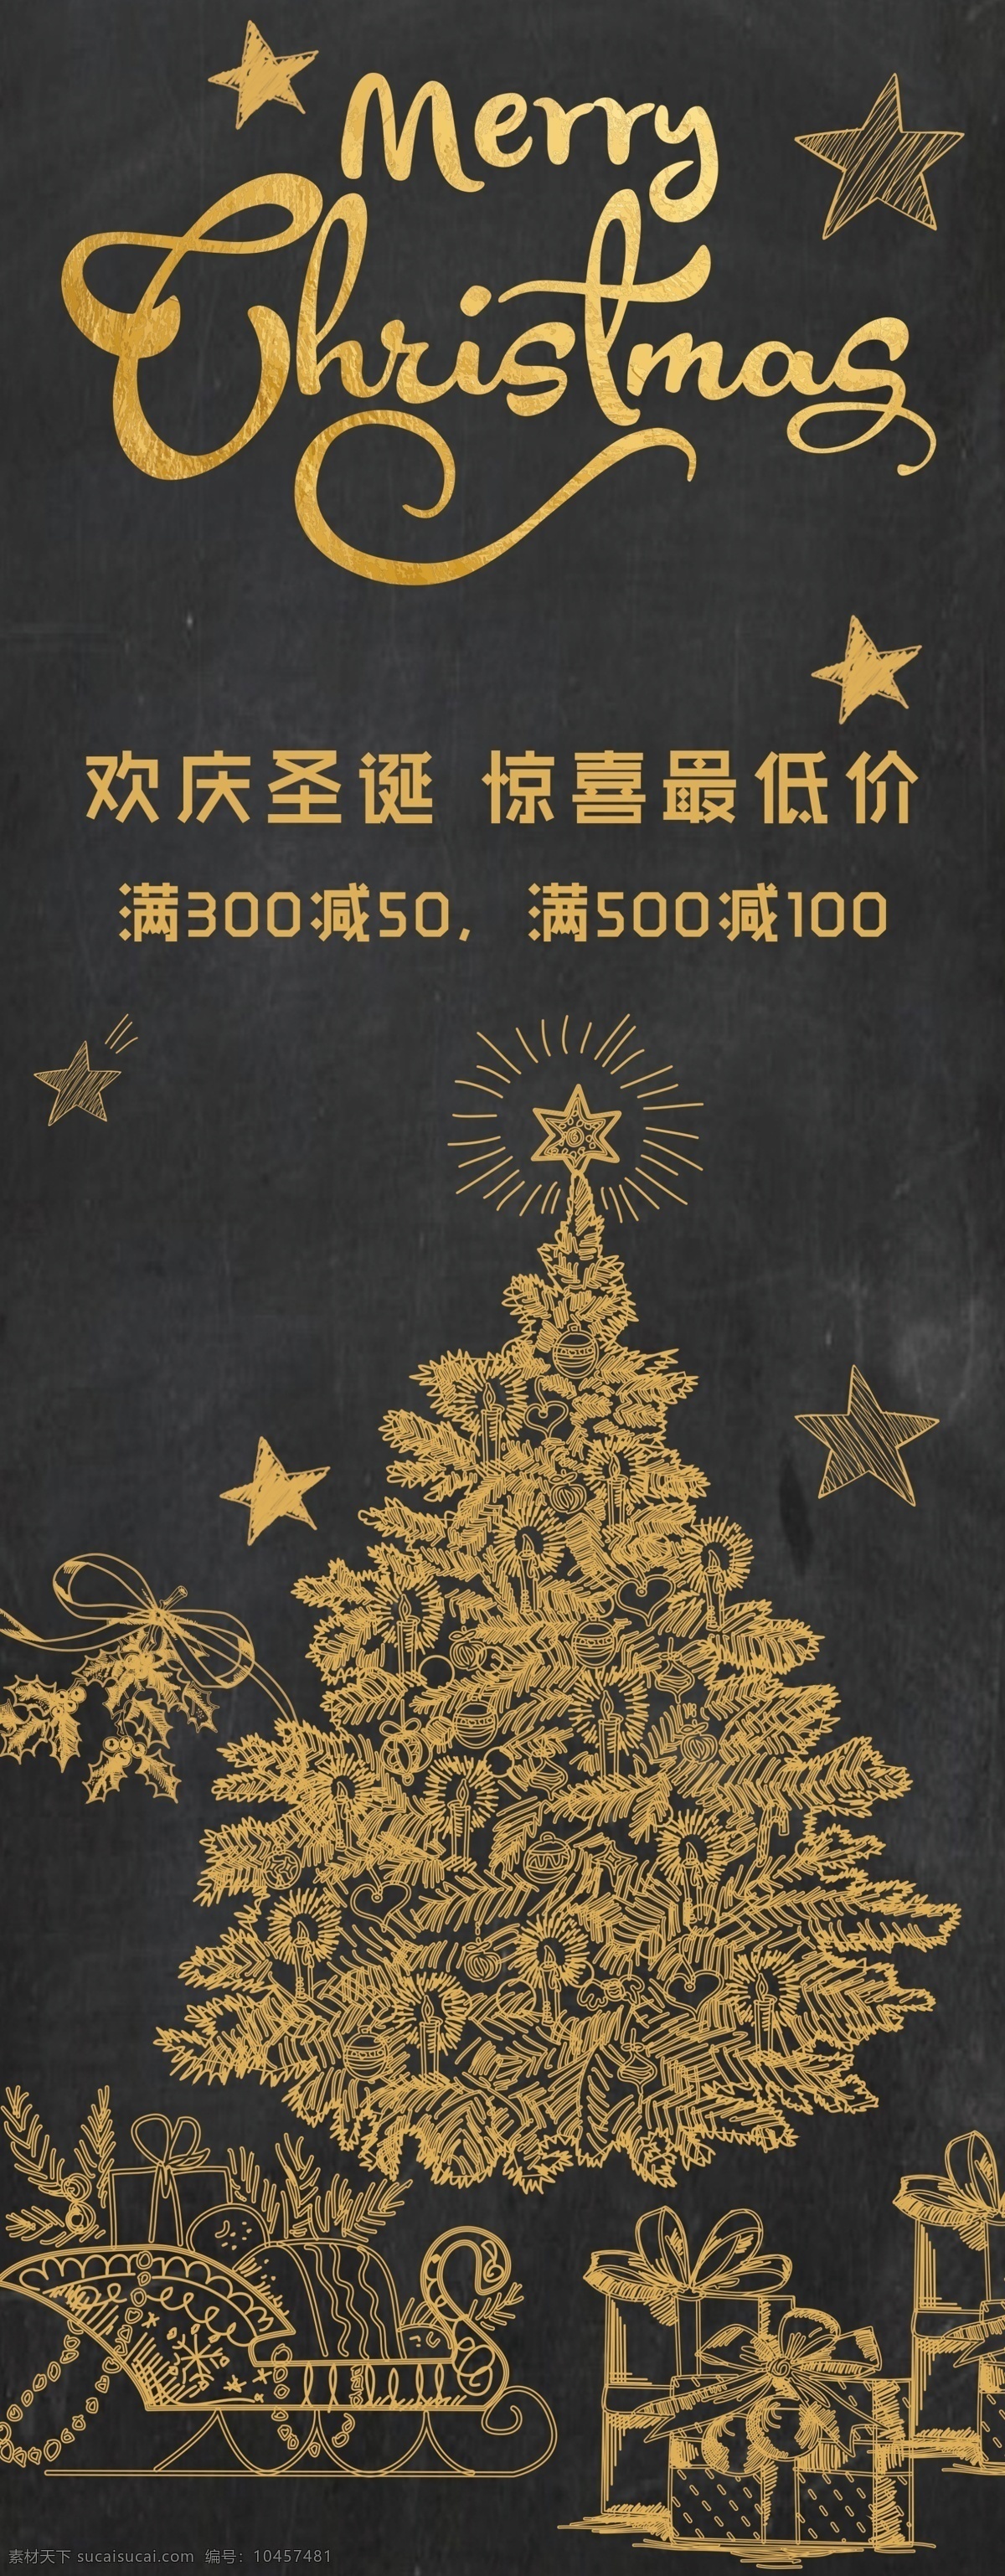 圣诞节 金色 黑板 涂鸦 海报 圣诞树 促销 礼品 手绘 黑金 满减 圣诞活动